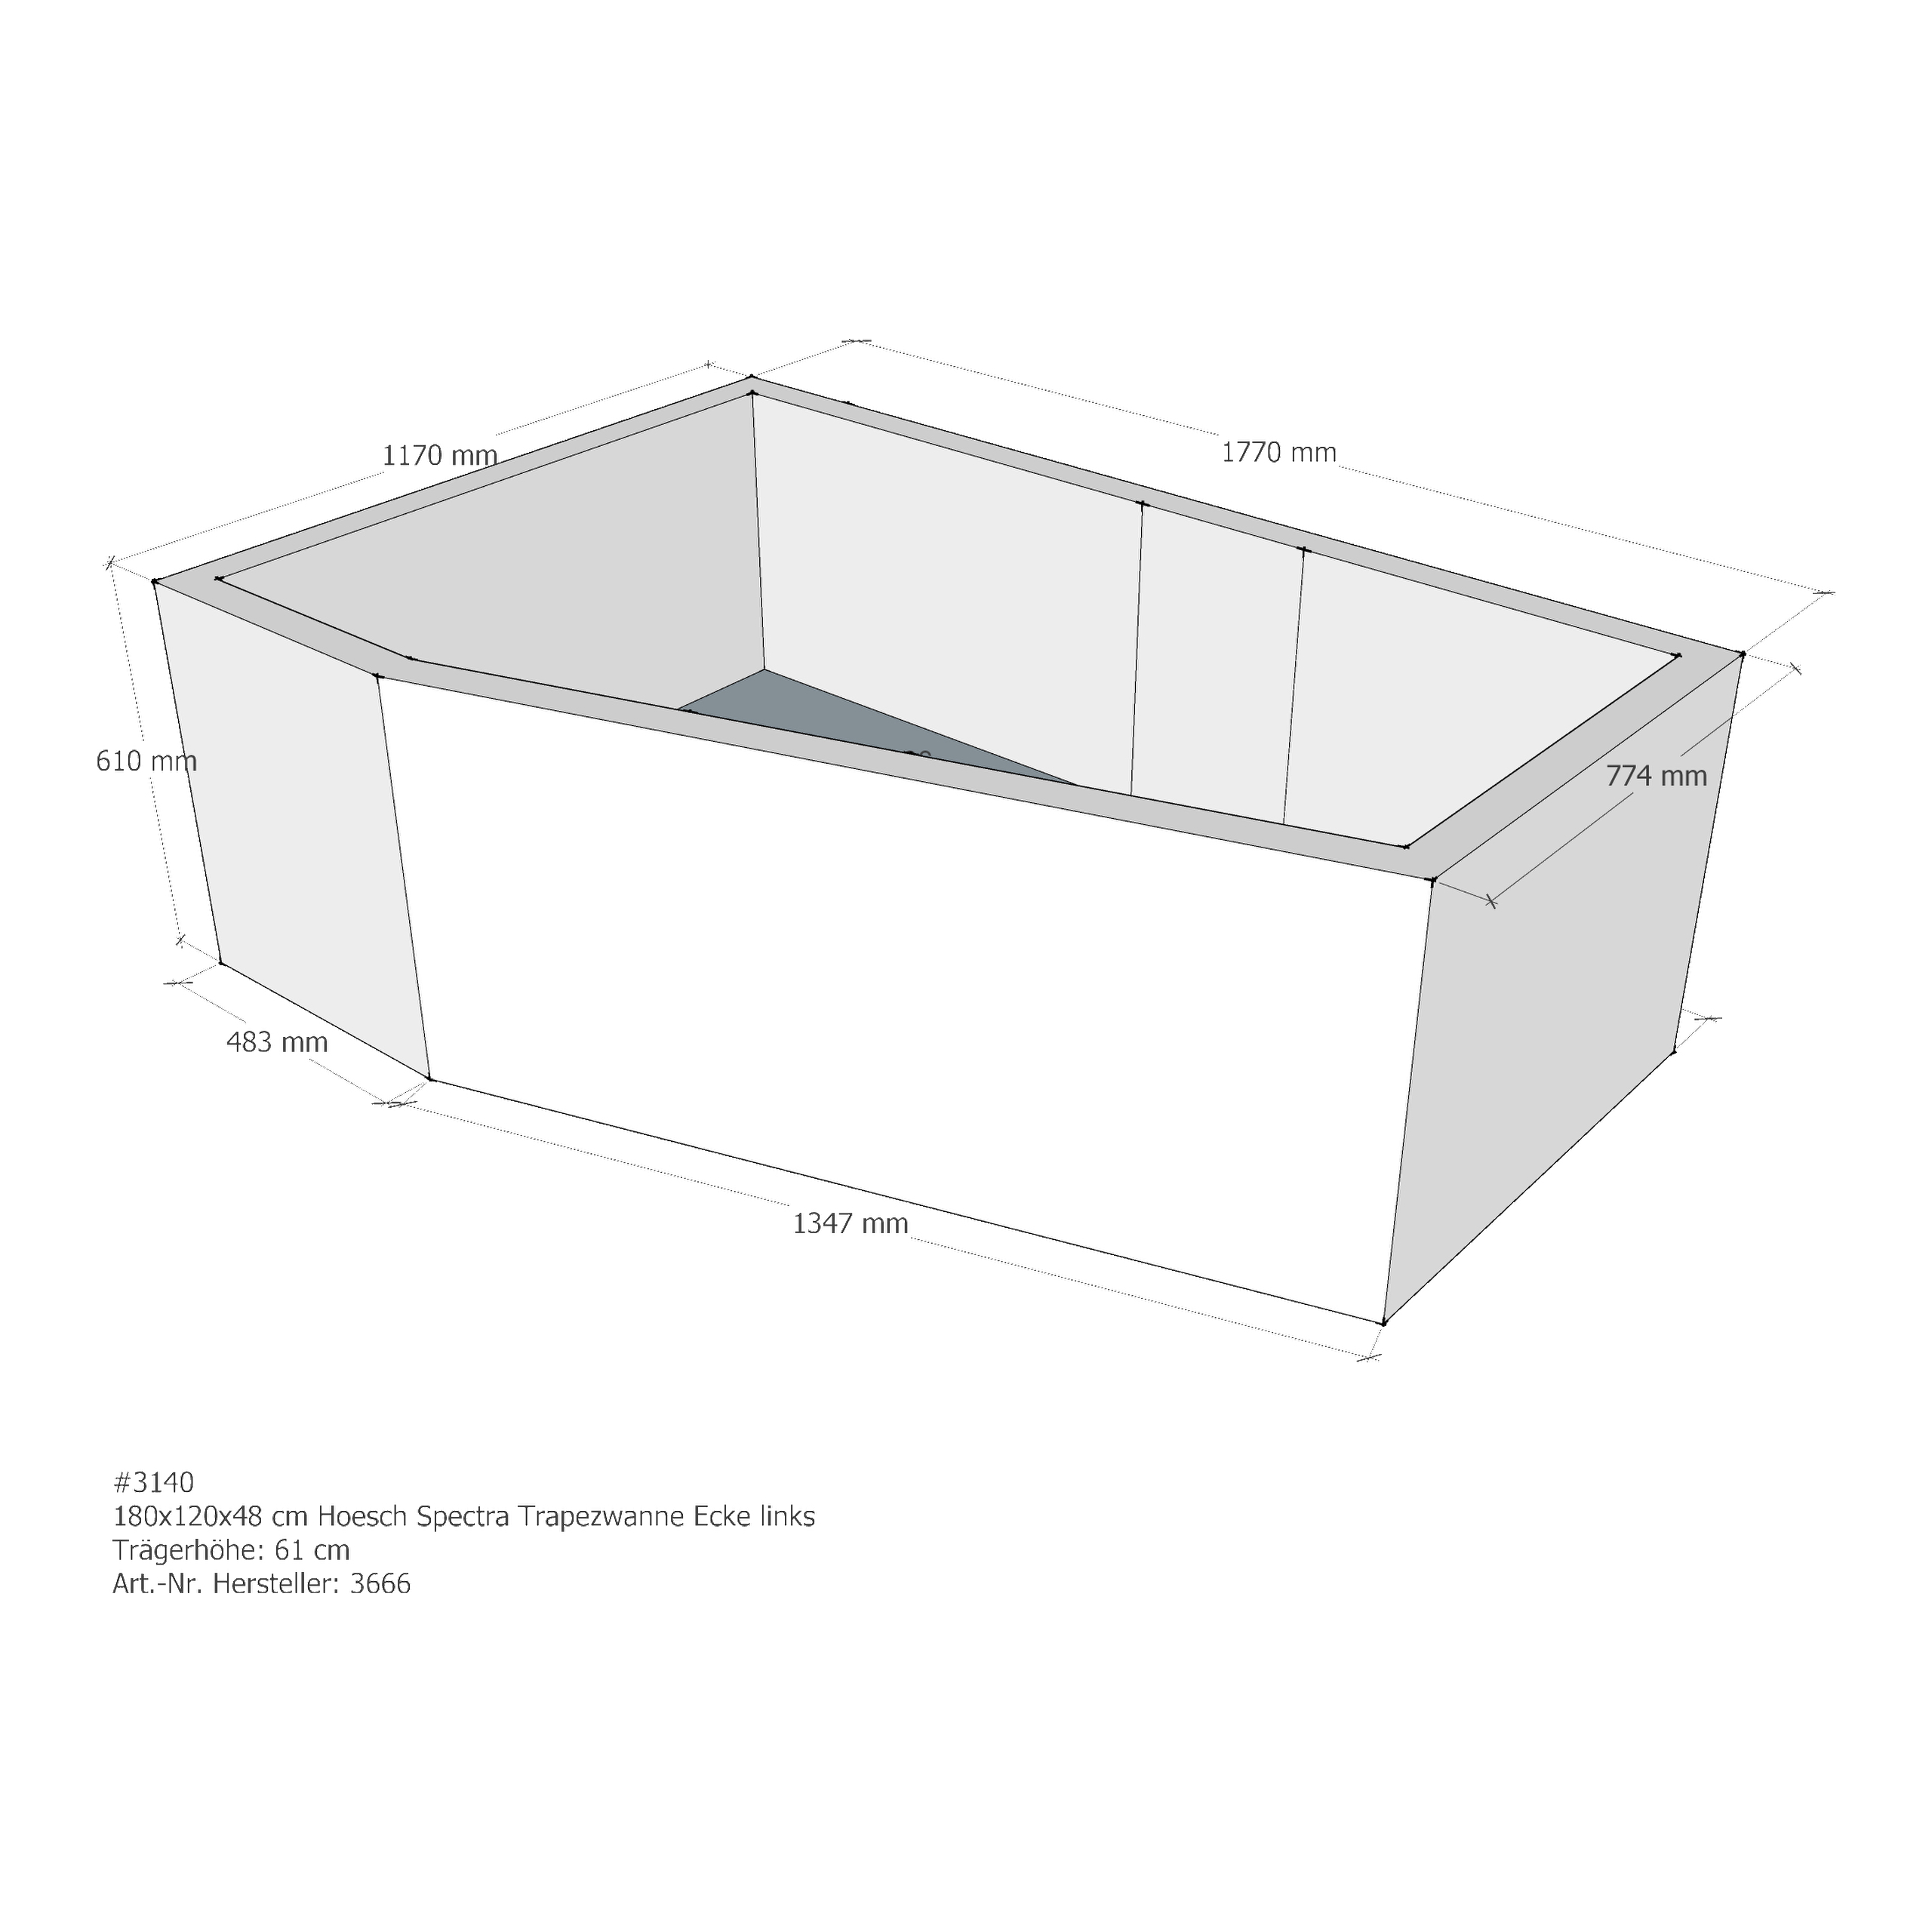 Badewannenträger für Hoesch Spectra 180x120 L 180 × 120 × 48 cm